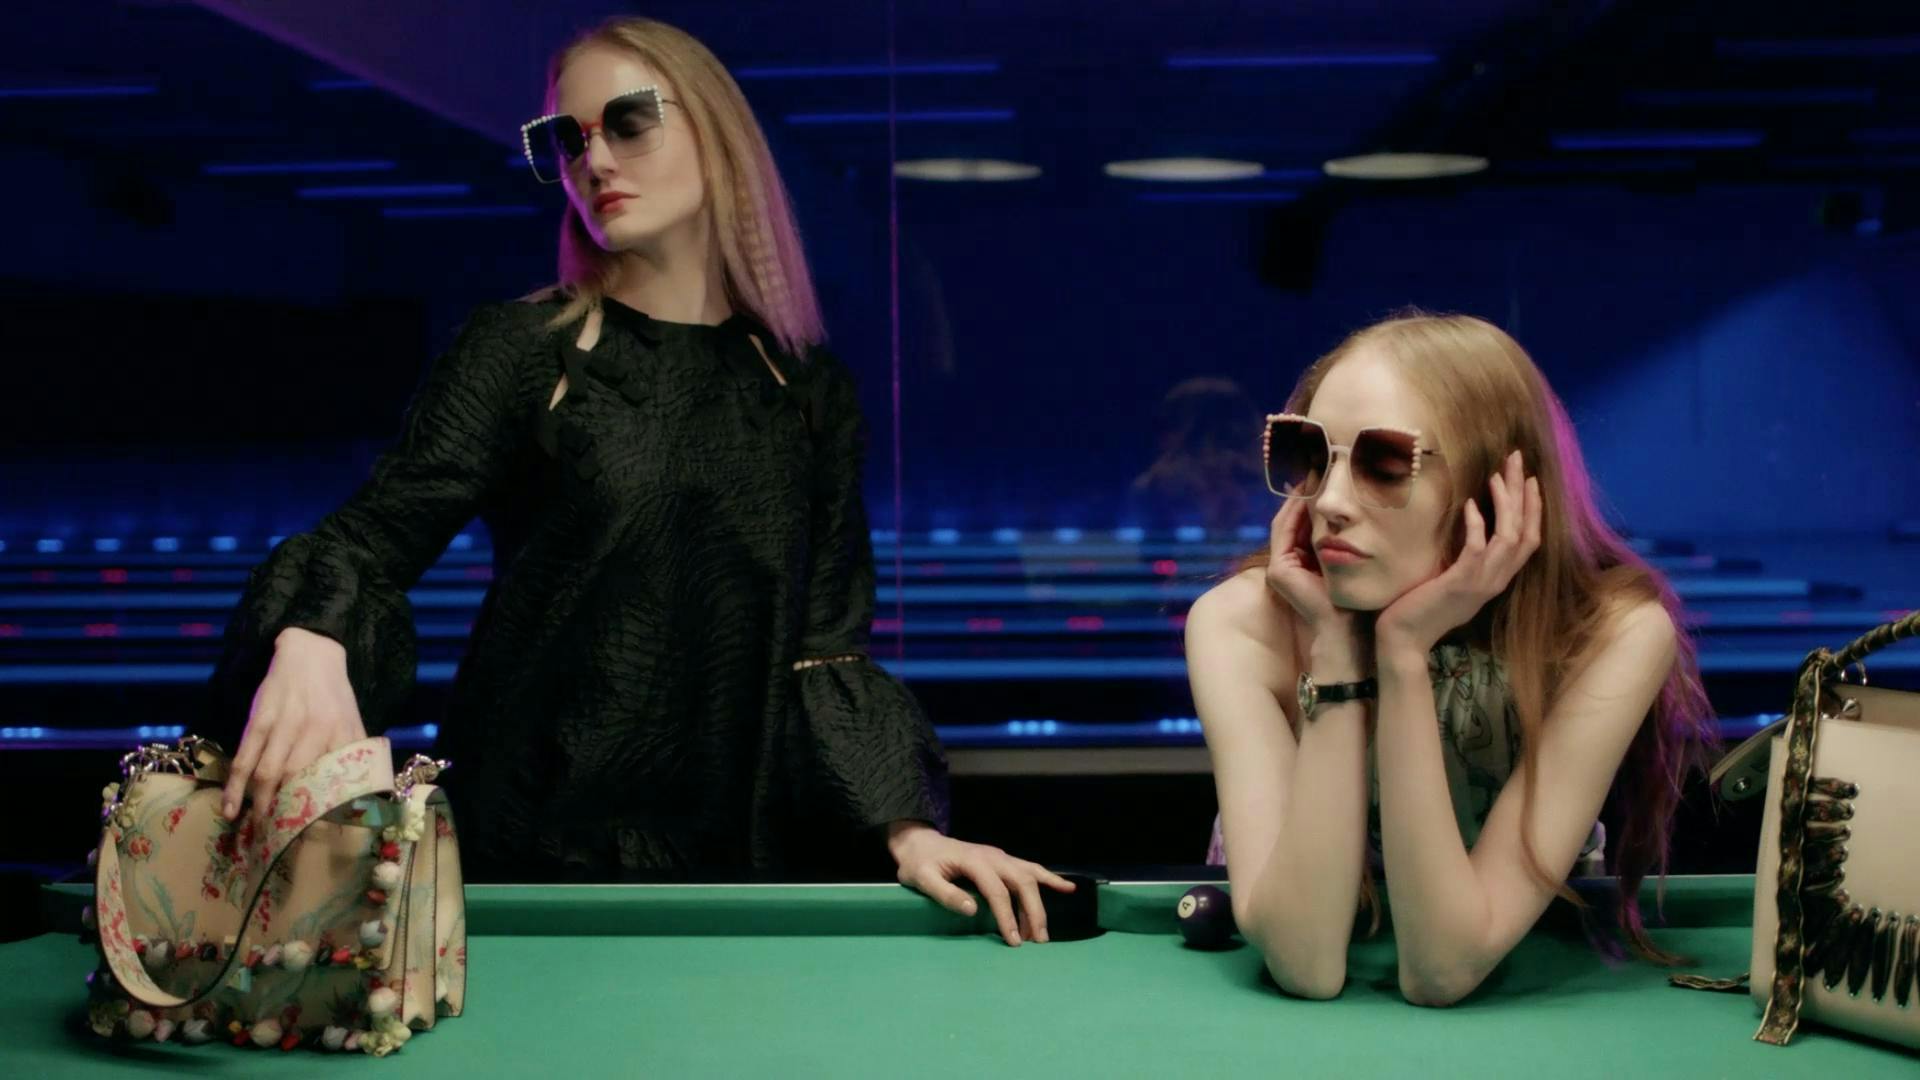 person human furniture room indoors sunglasses accessories table billiard room pool table